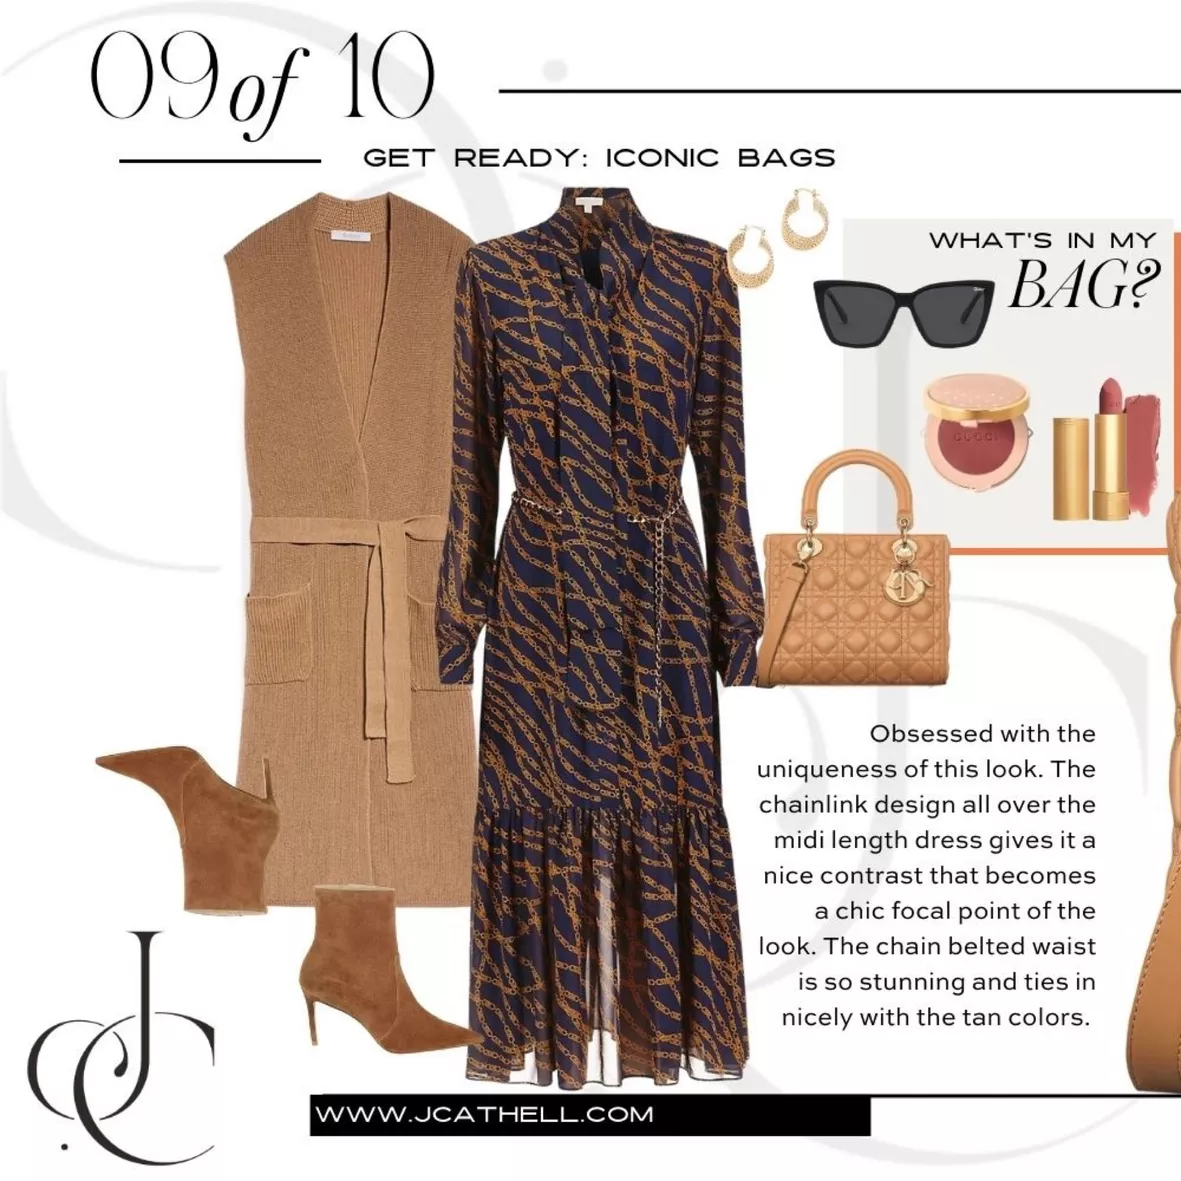 Medium Lady Dior bag - DIOR curated on LTK